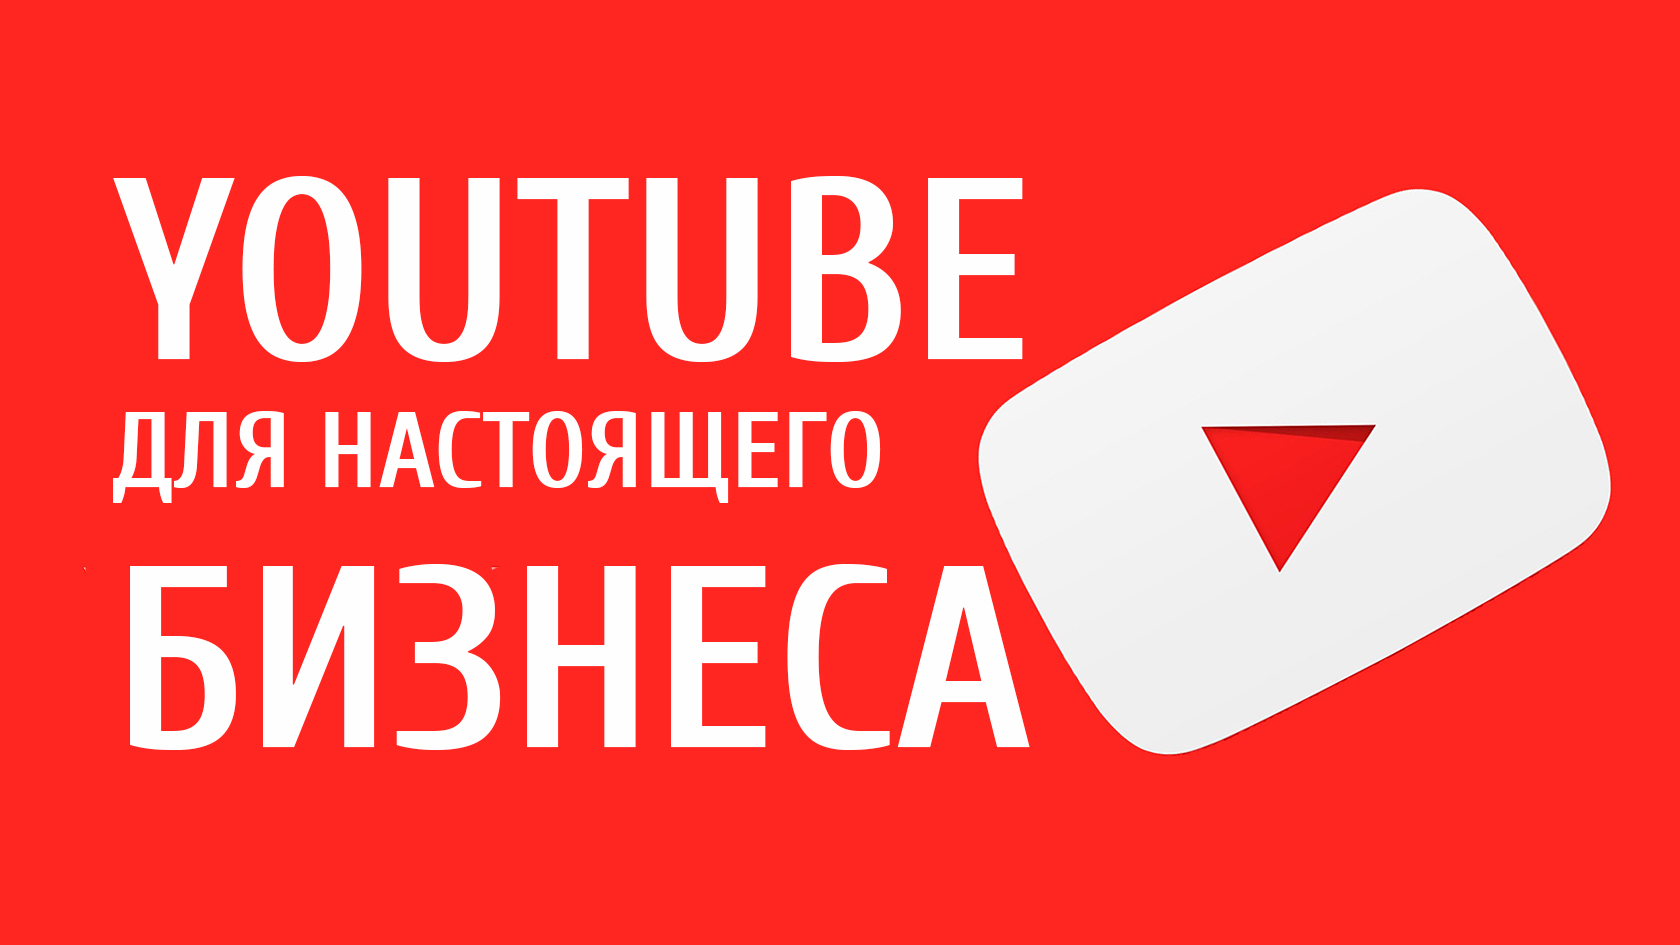 Продвигать youtube